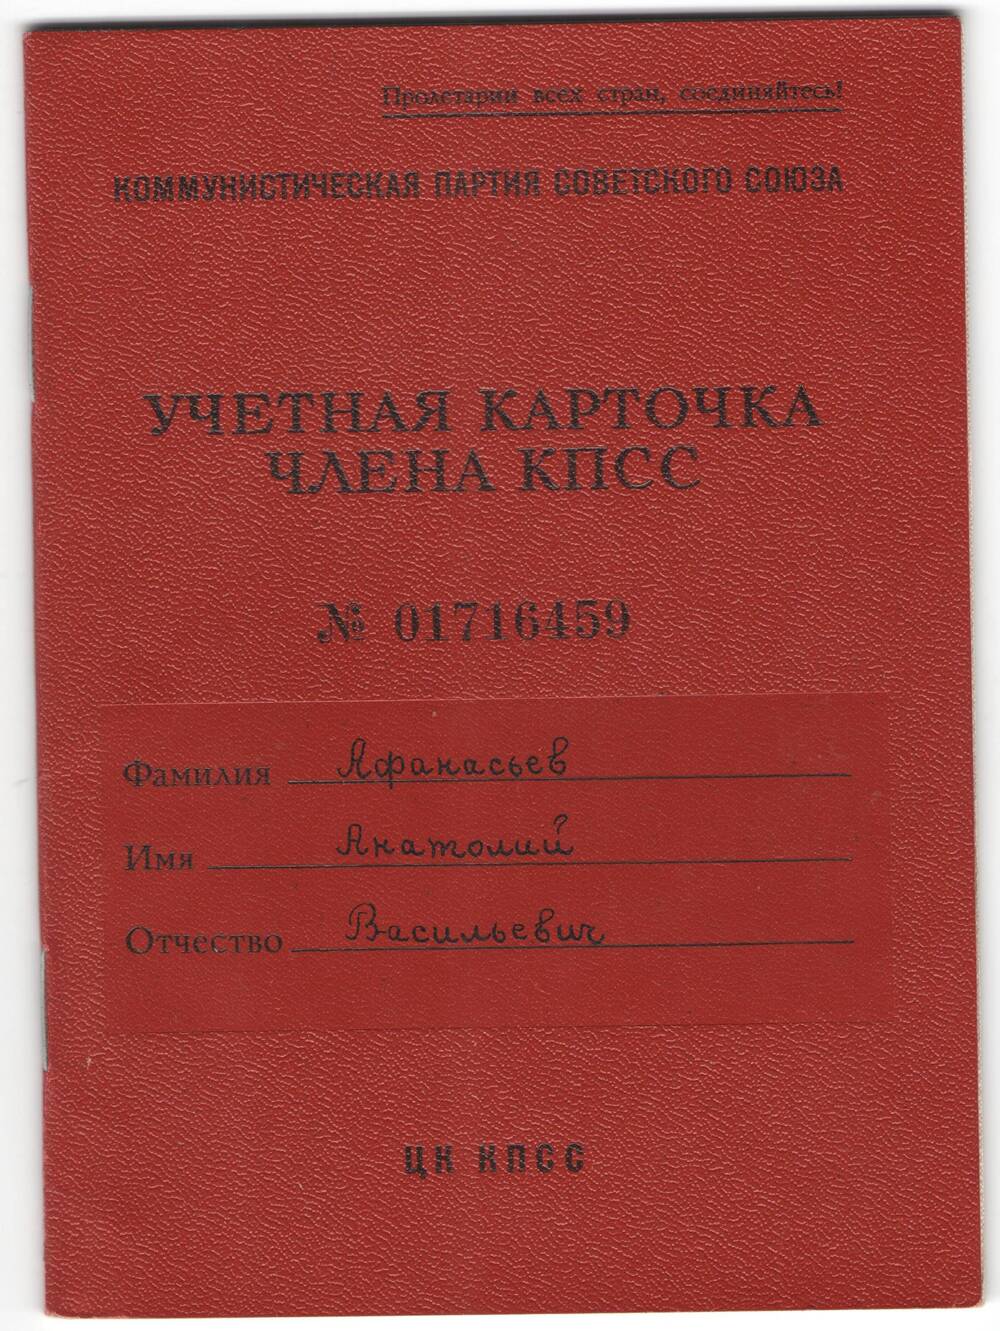 Учетная карточка члена КПСС № 01716459 Афанасьева А. В.